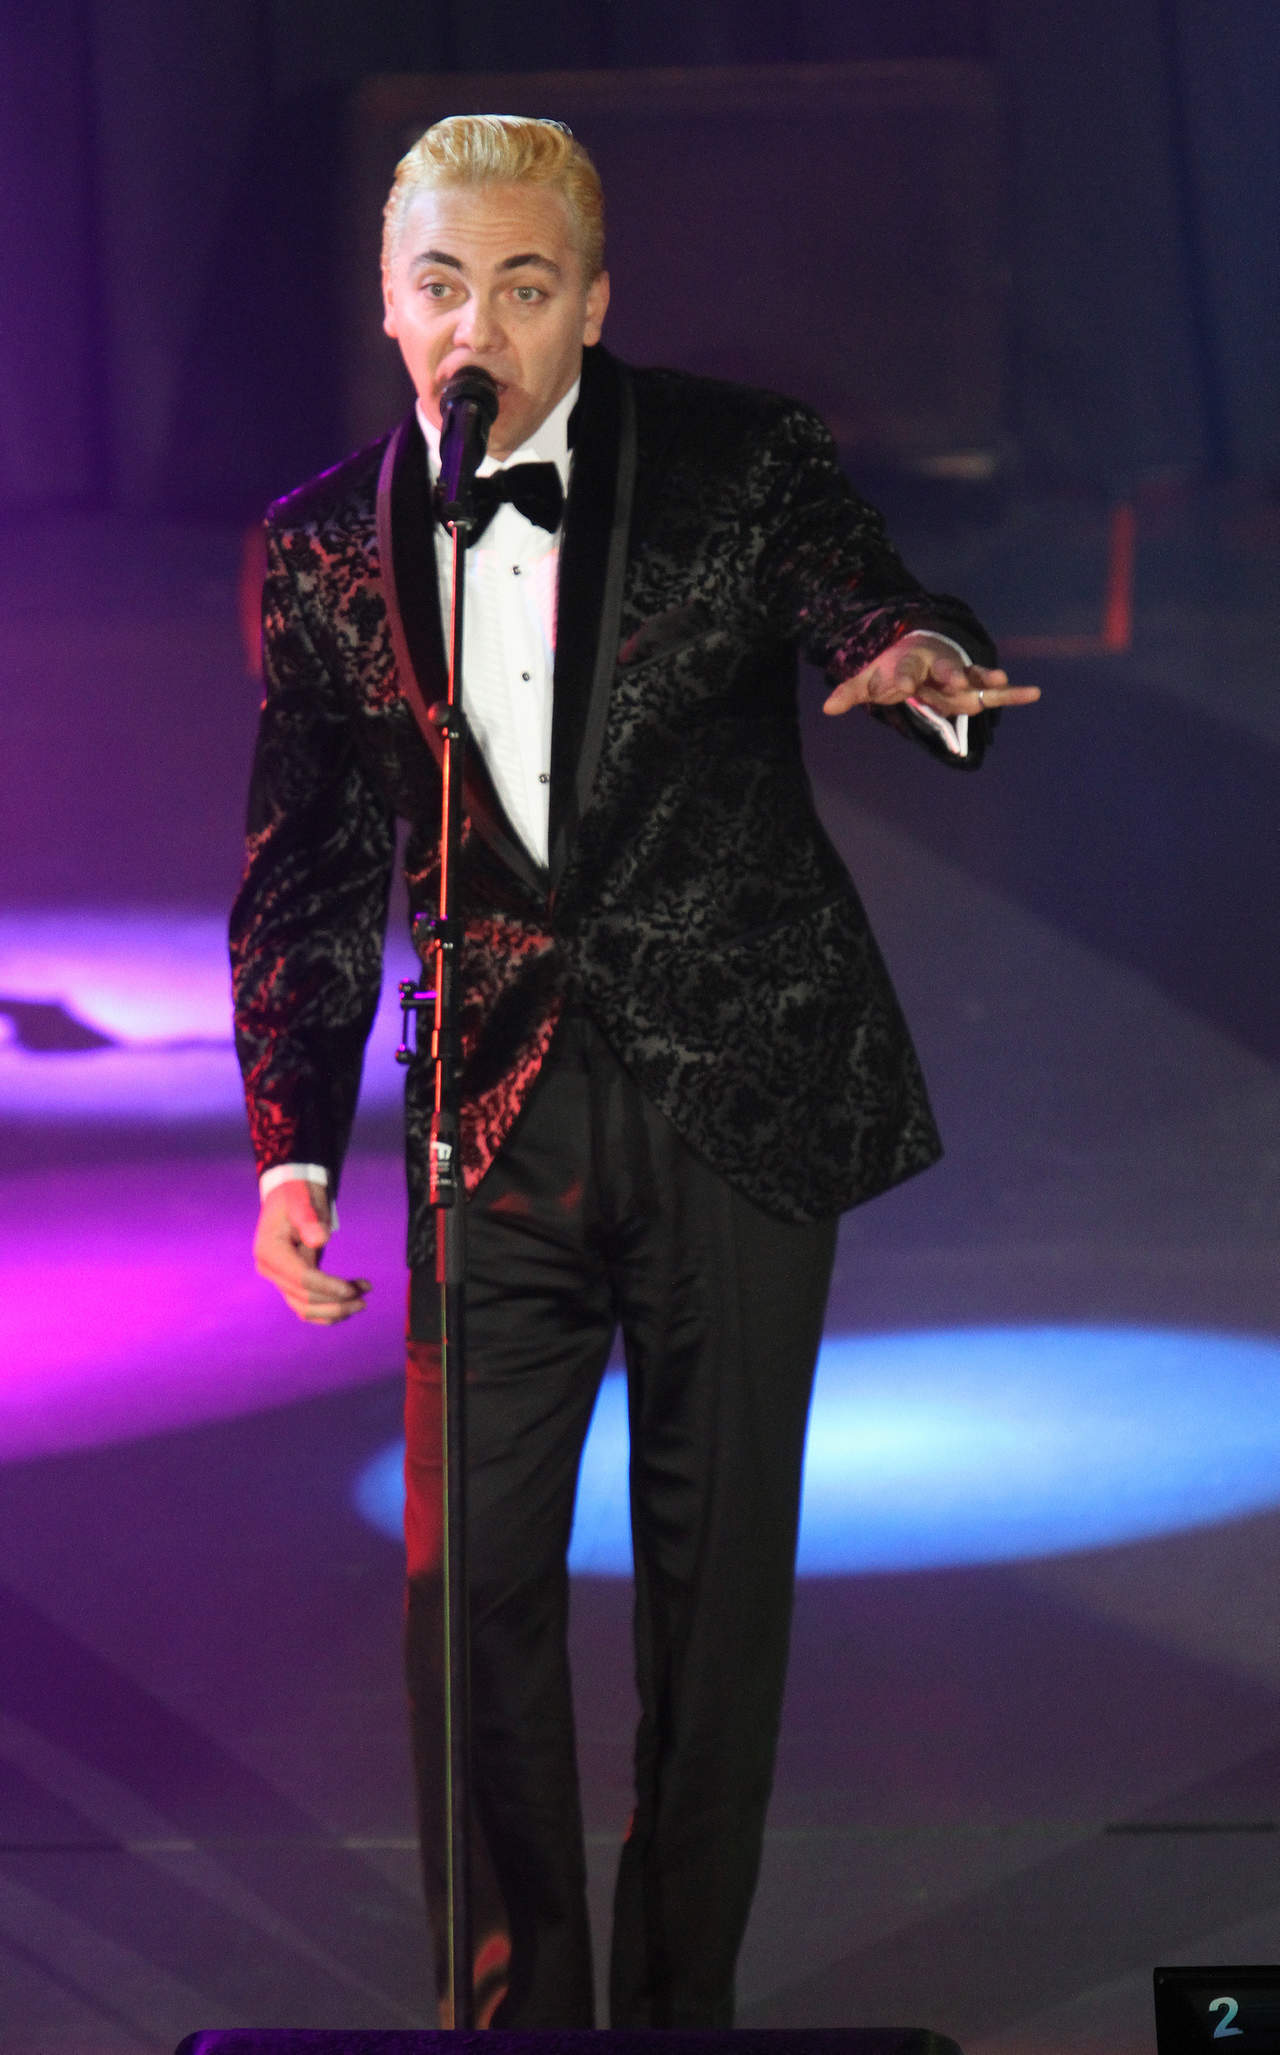 El cantante mexicano Cristian Castro, intérprete de temas como Lloran las rosas, No hace falta y Azul, cumple este jueve 42 años. (ARCHIVO)